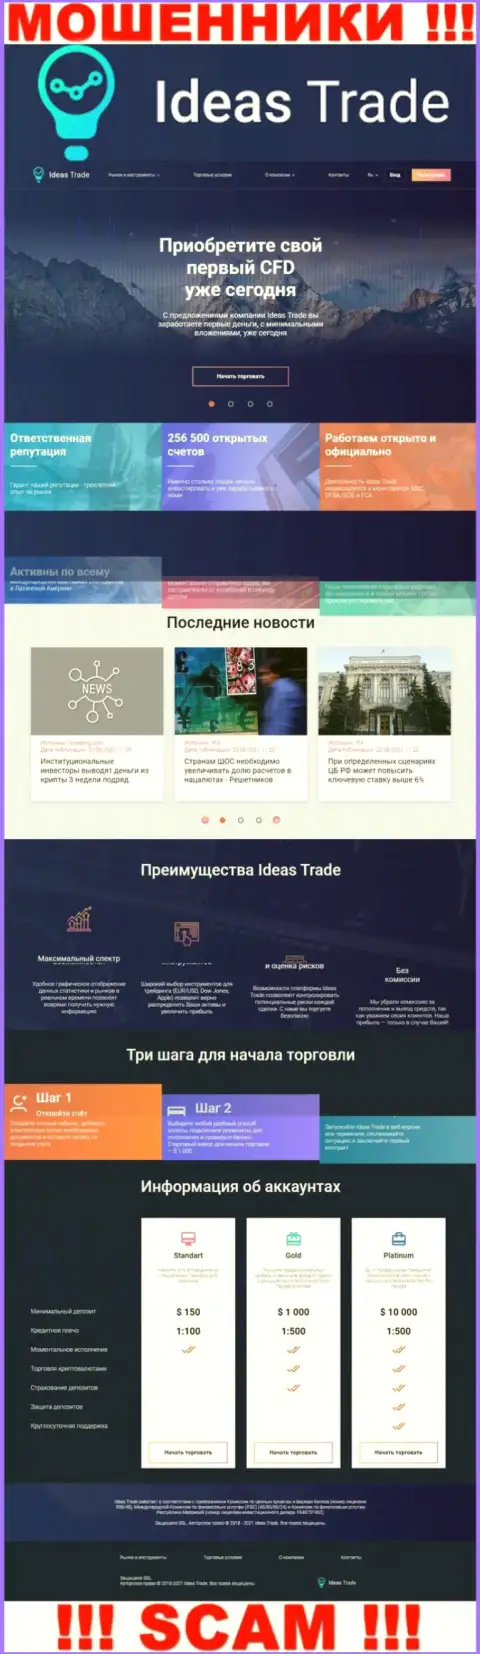 Официальный сайт мошенников Ideas Trade